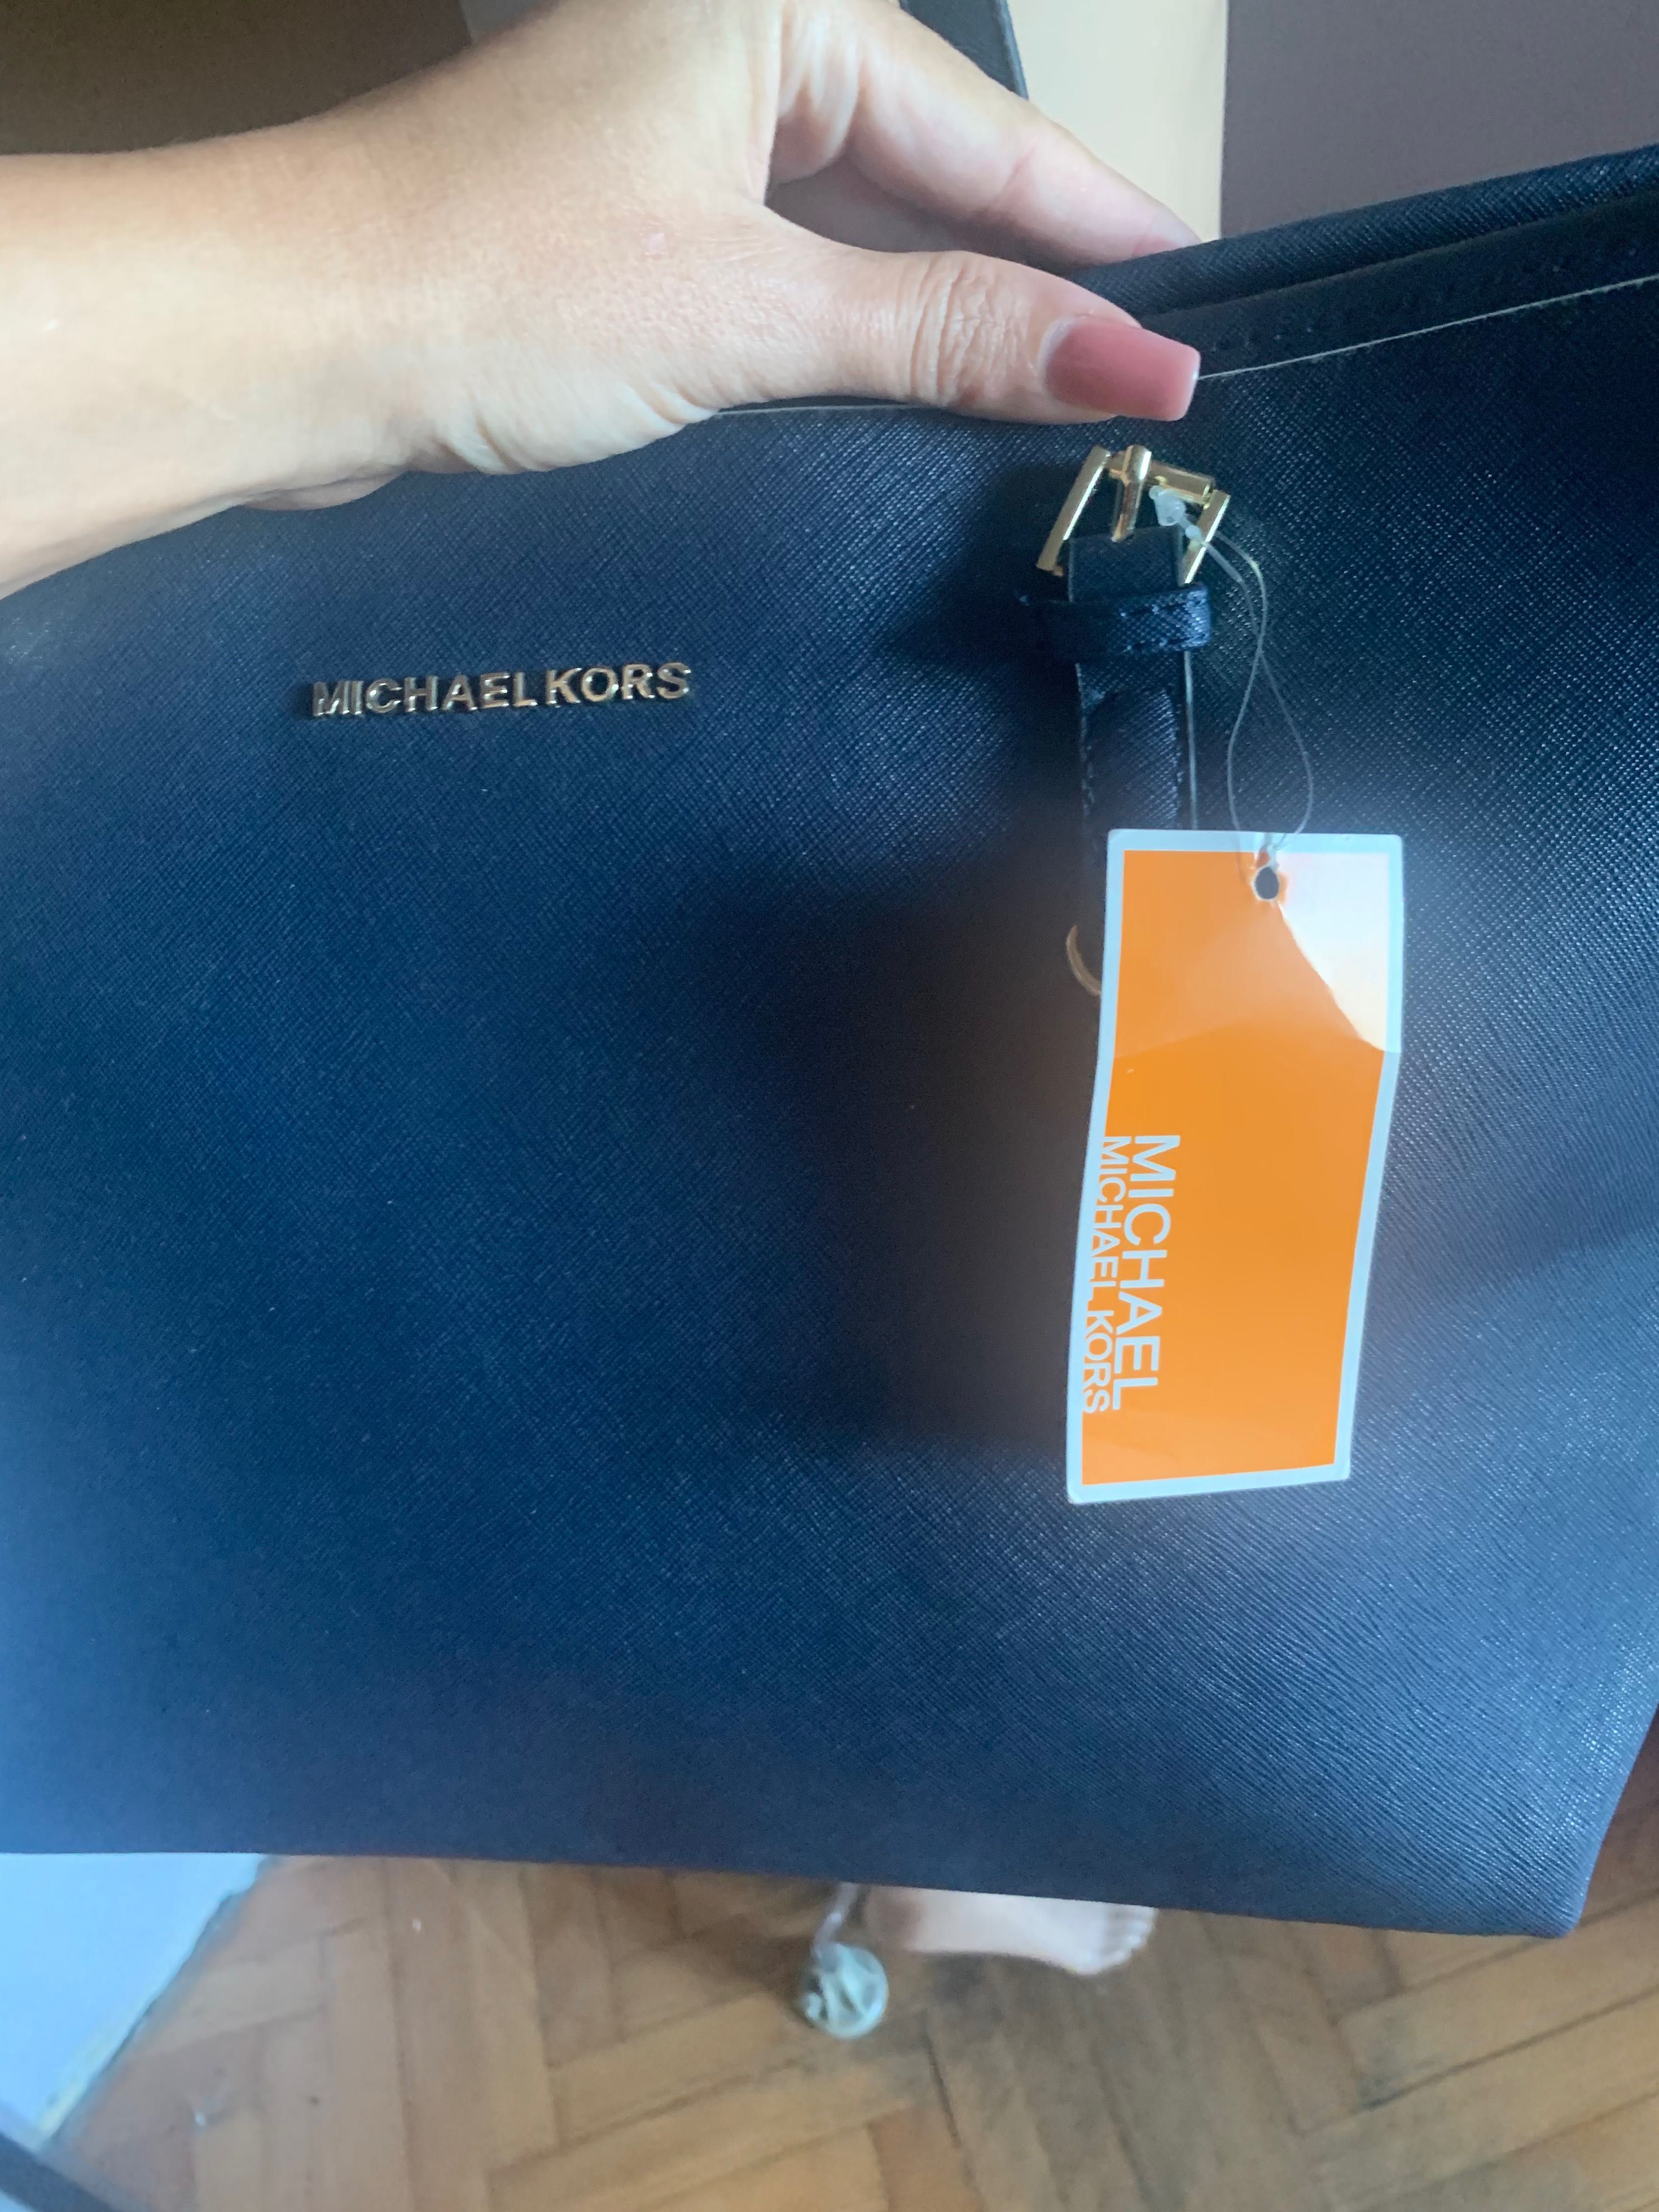 Дамска чанта Michael Kors, естествена кожа ( нова с етикет)